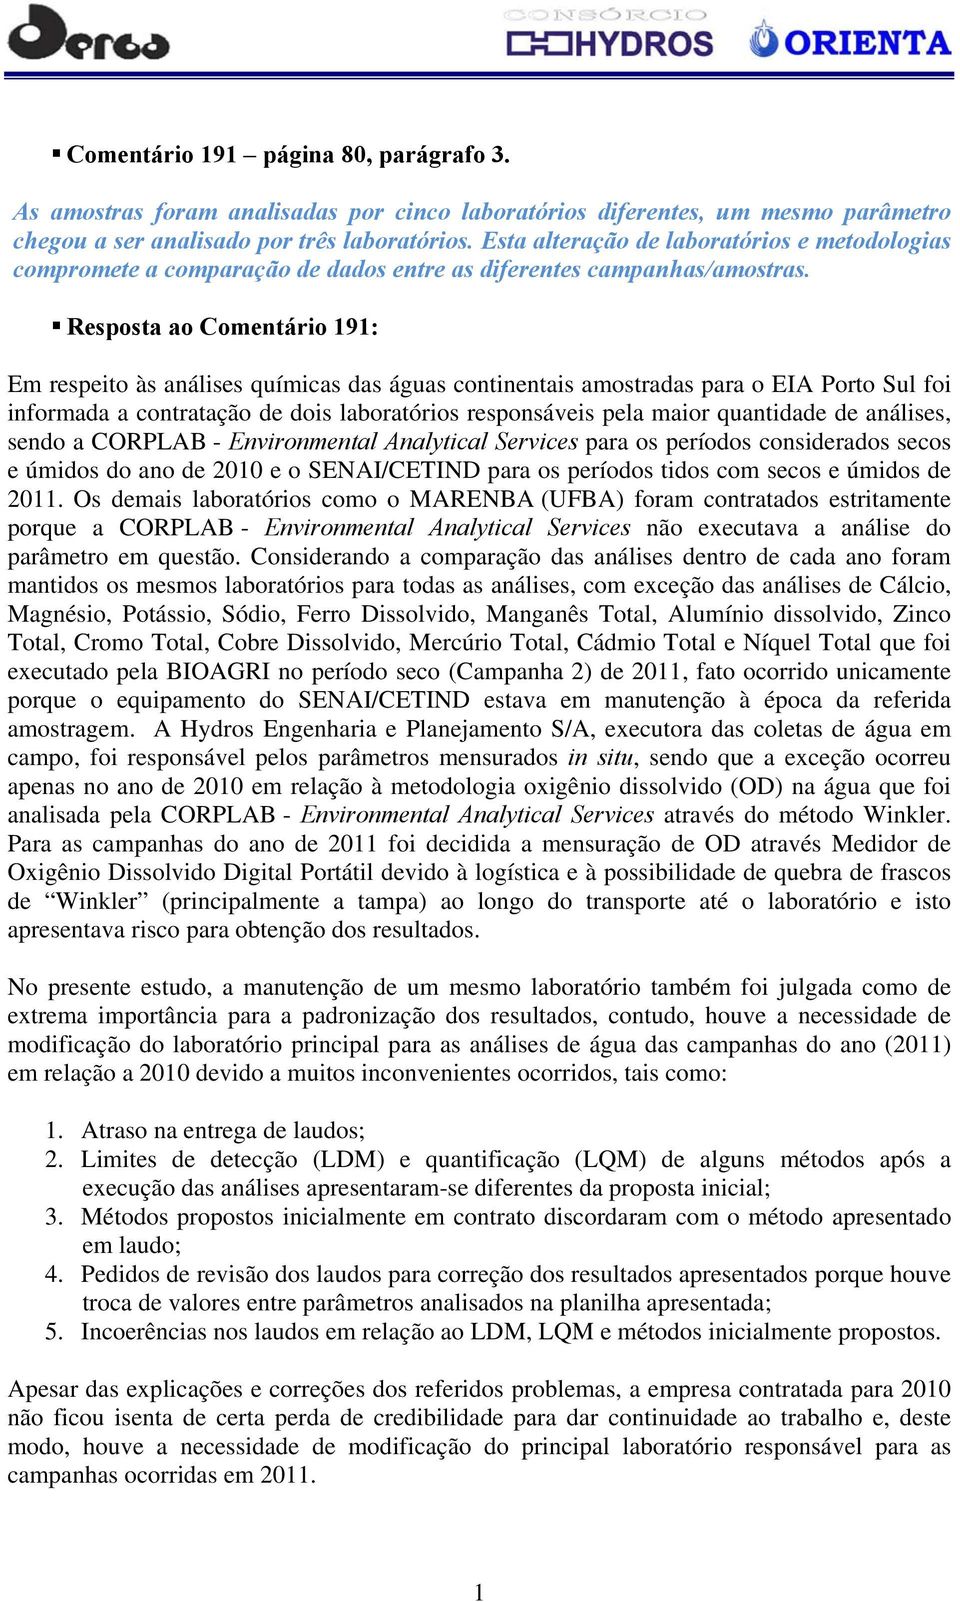 Resposta ao Comentário 191: Em respeito às análises químicas das águas continentais amostradas para o EIA Porto Sul foi informada a contratação de dois laboratórios responsáveis pela maior quantidade